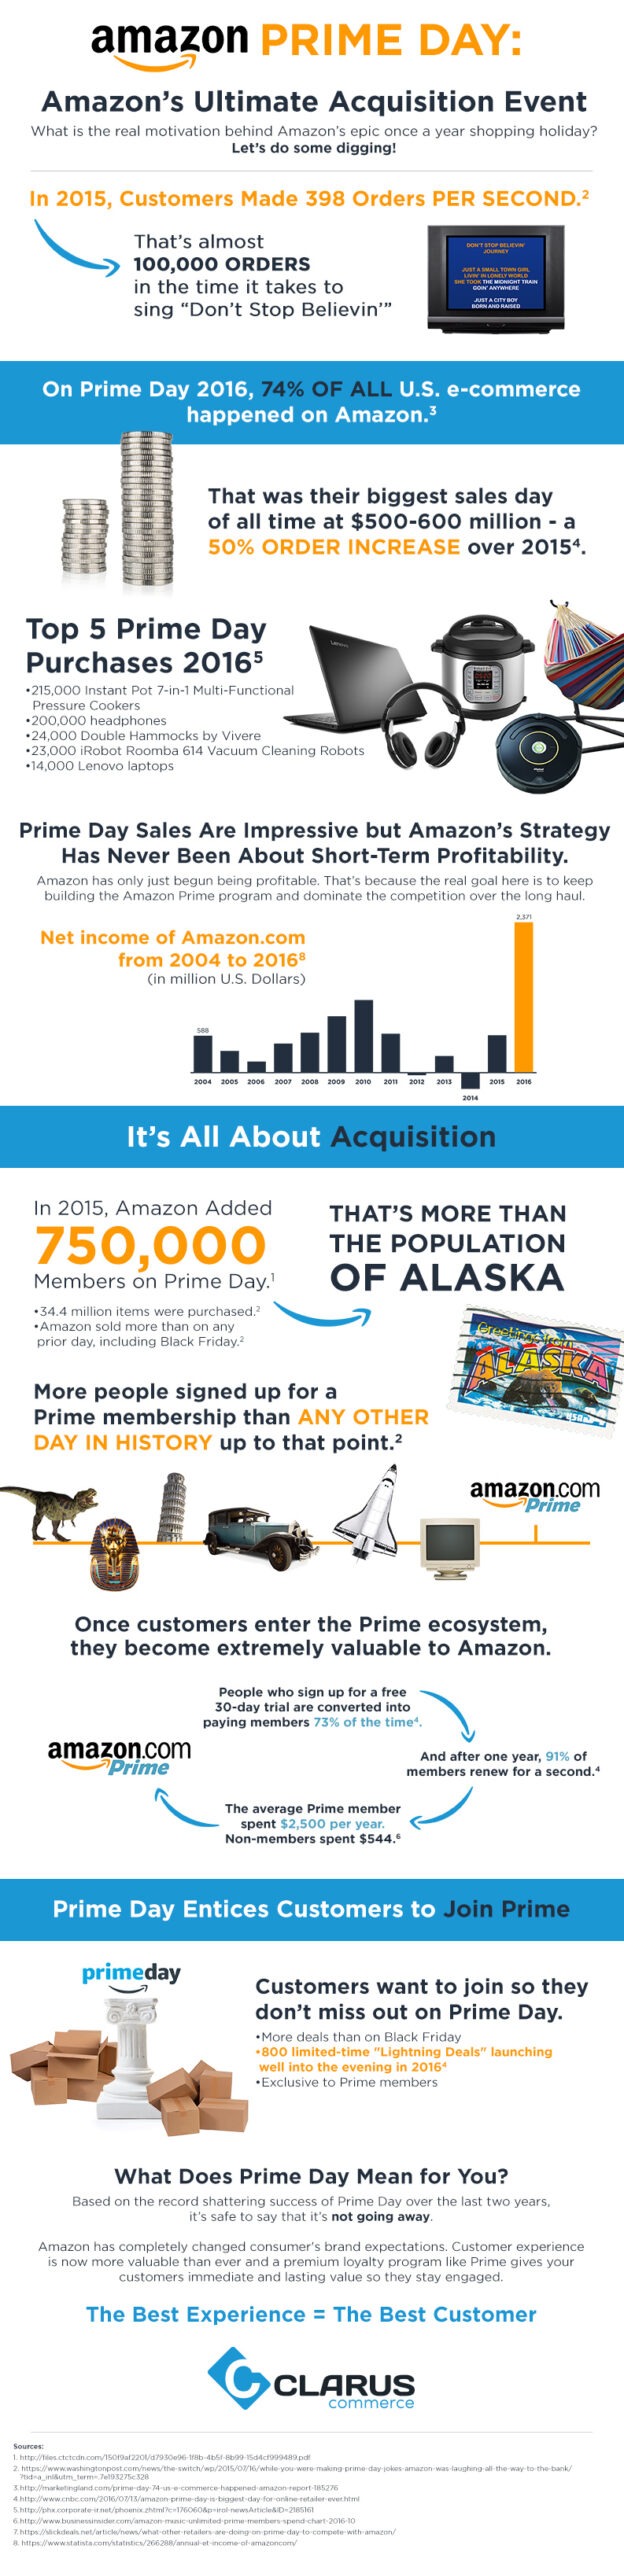 Amazon Prime Day 2017 Infographic